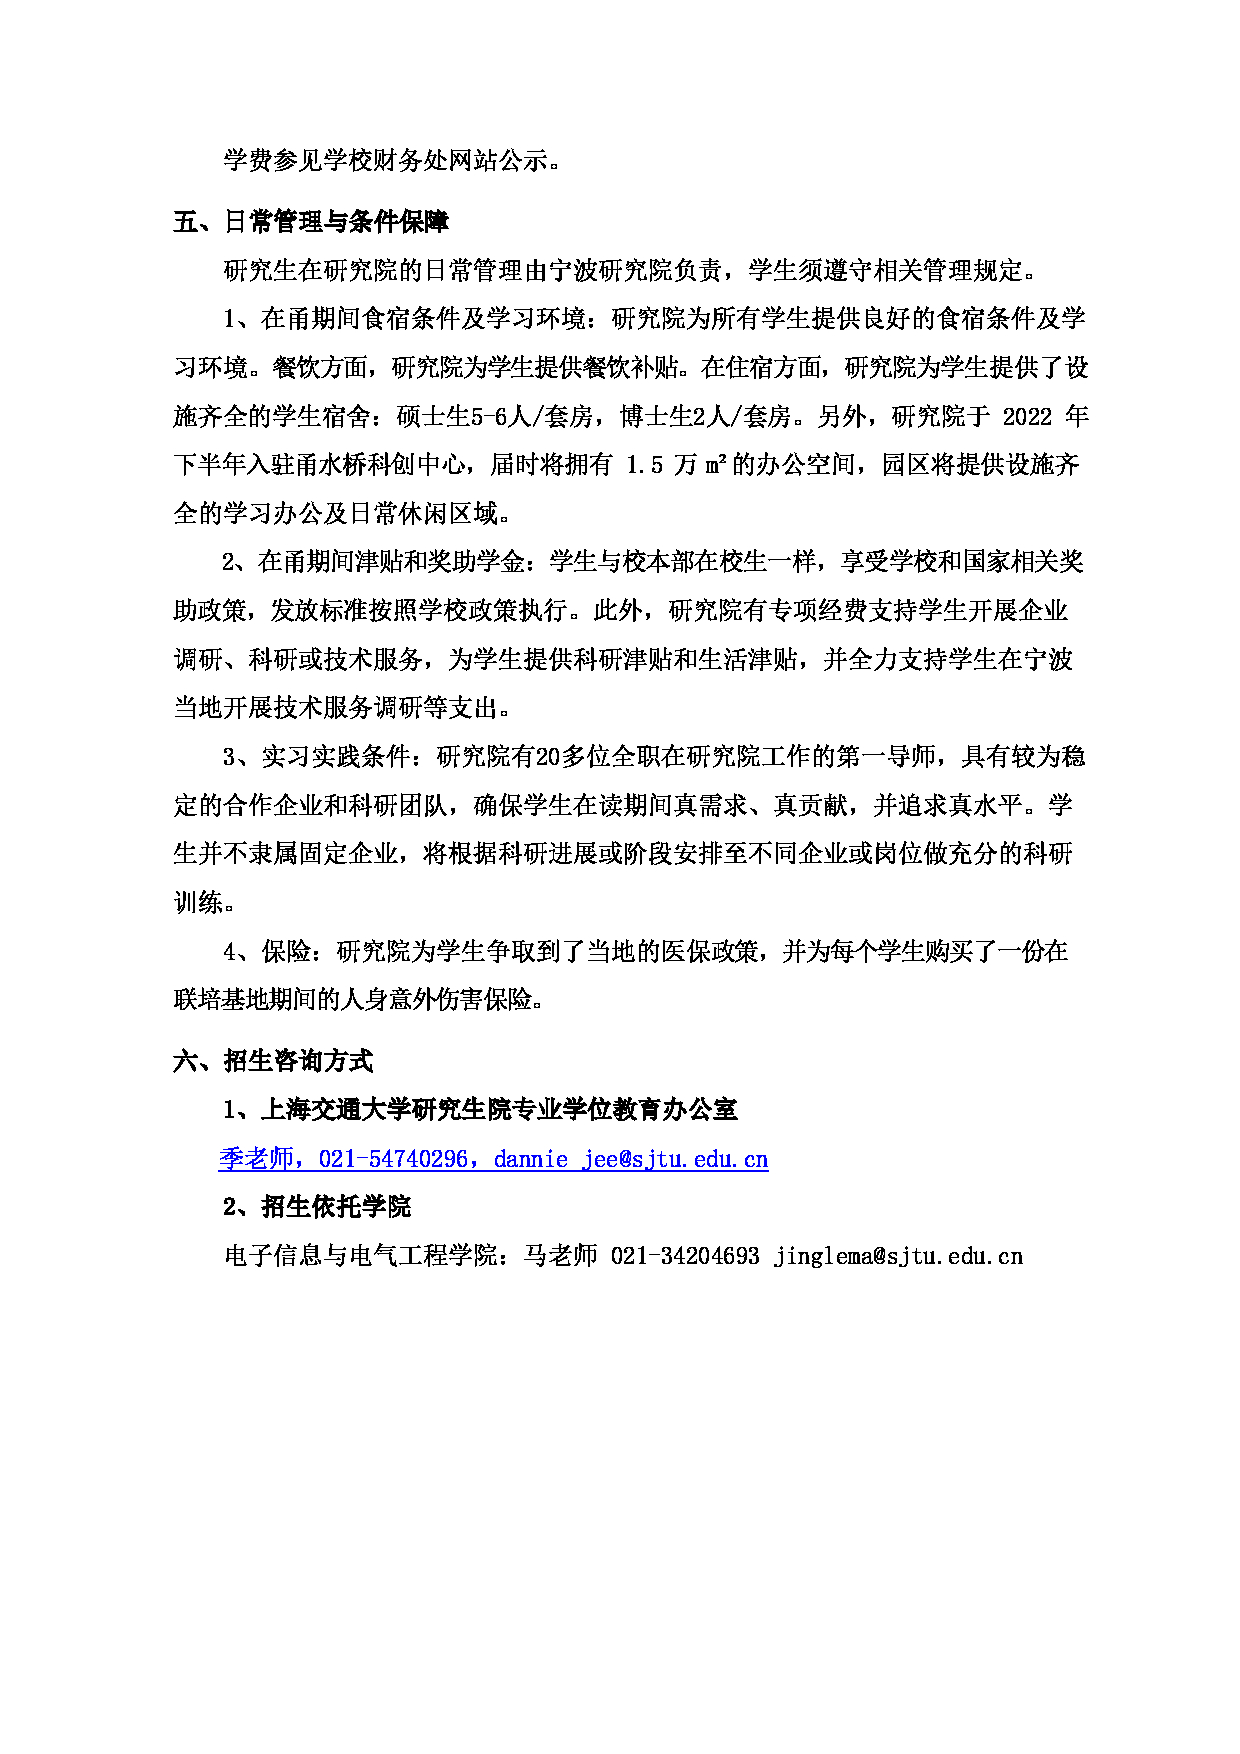 2023招生简章：上海交通大学宁波研究院联培基地2023年专业学位硕士研究生招生简章第2页